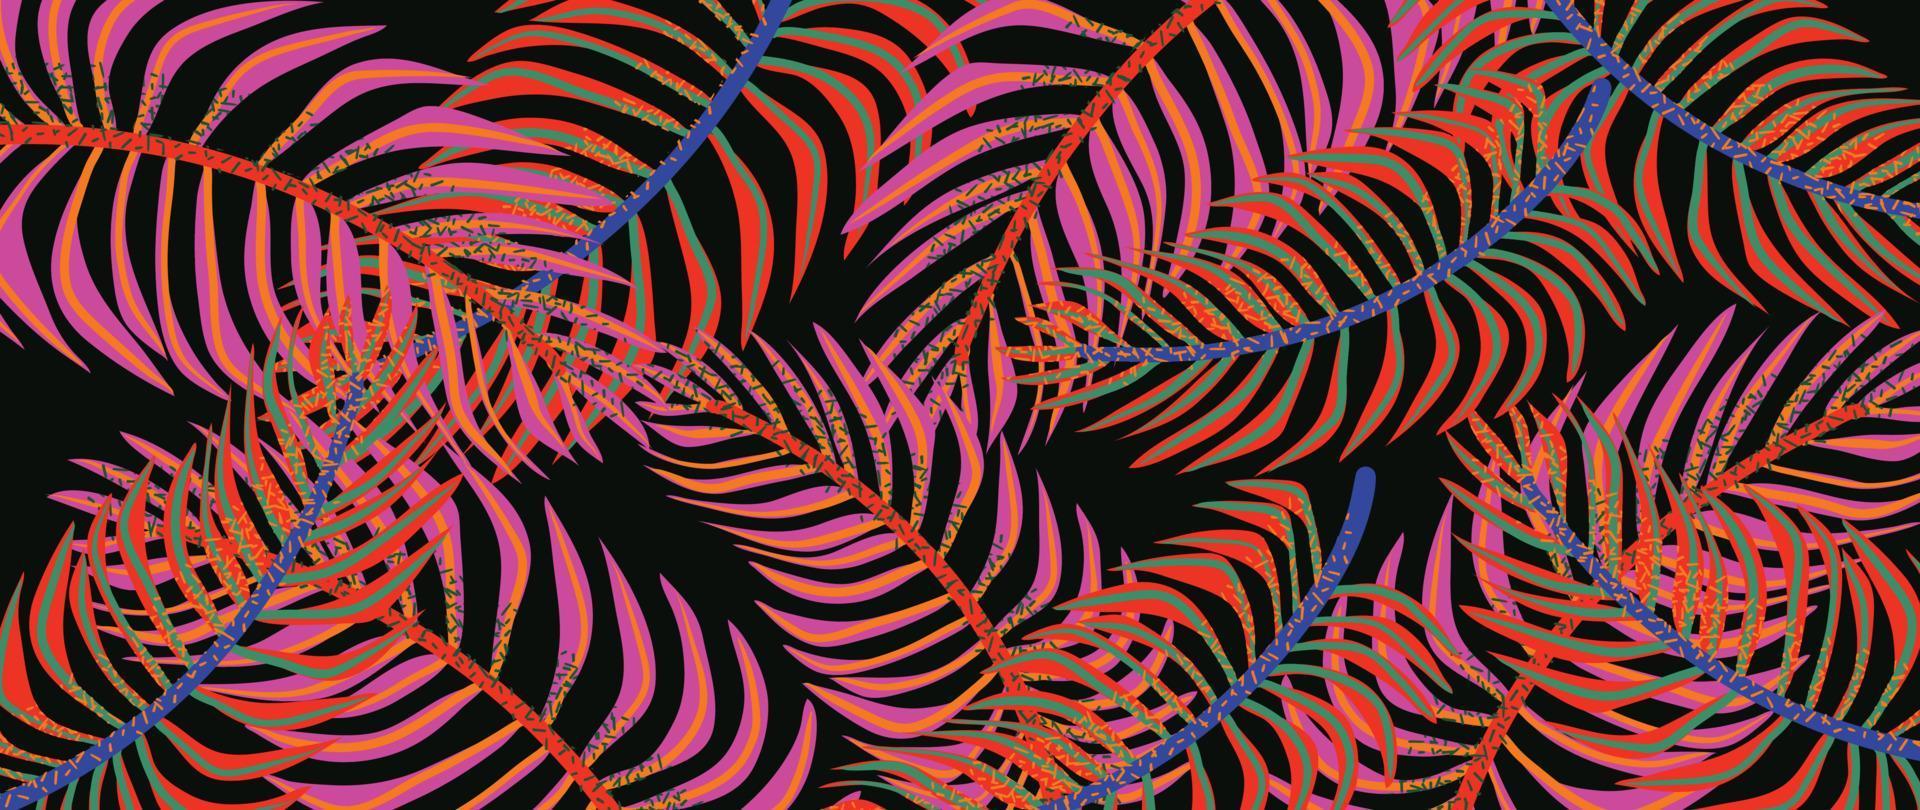 färgrik tropisk löv bakgrund vektor illustration. abstrakt botanisk handflatan löv mönster, exotisk vibrerande sommar stil med grunge textur. samtida design för Hem dekoration, tapet.